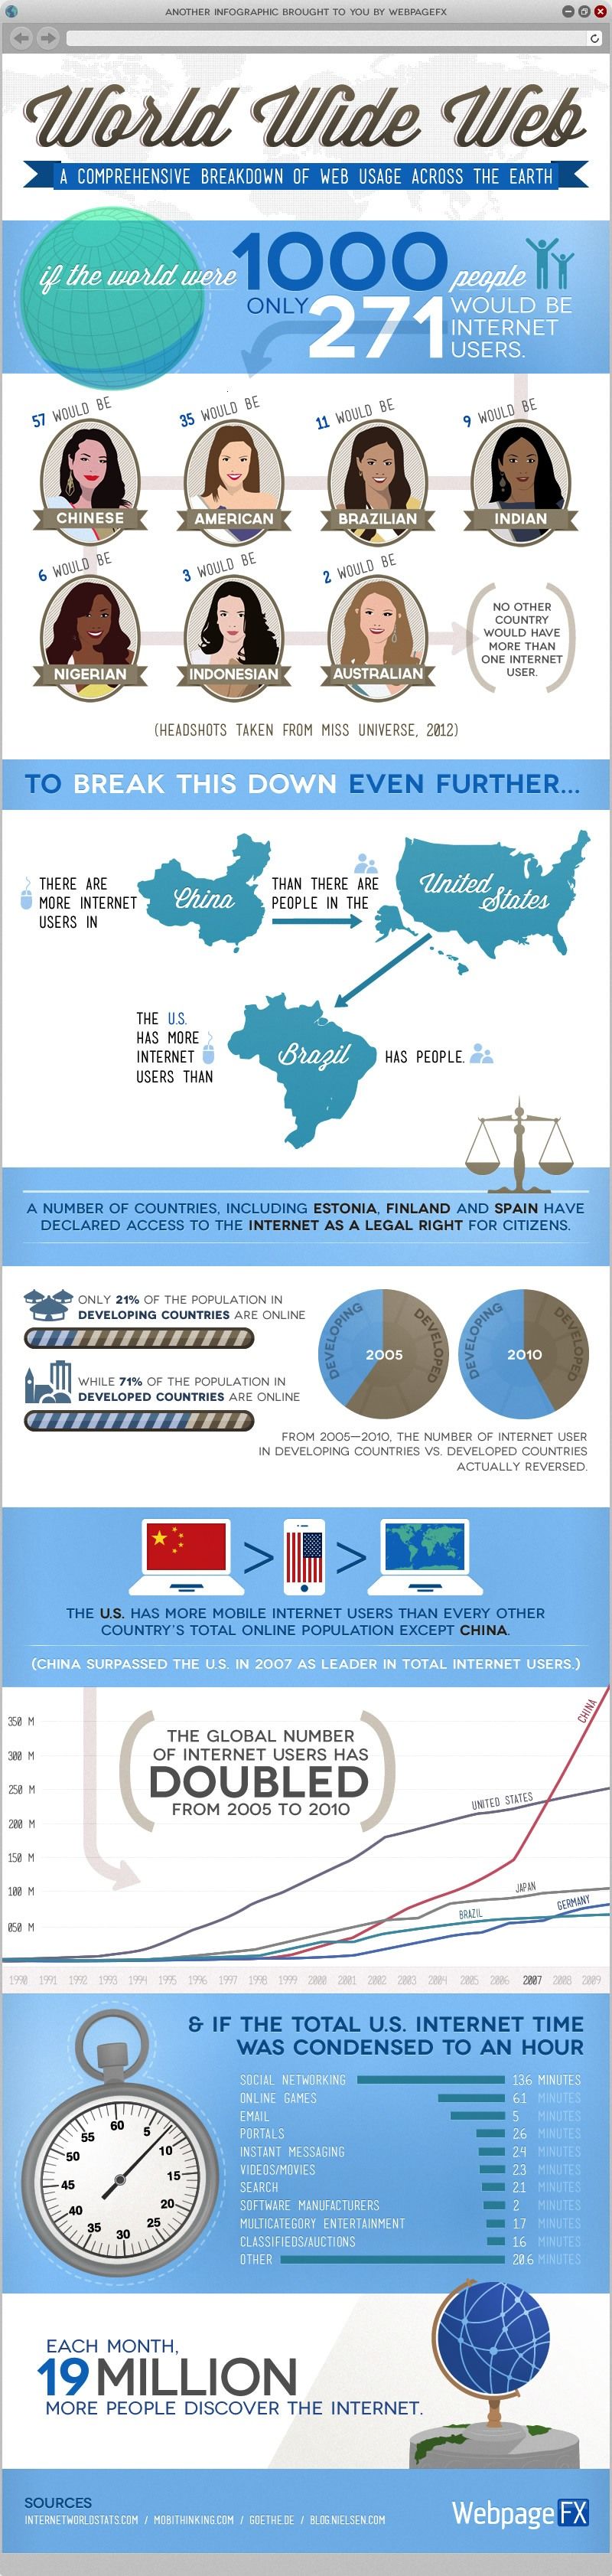 Интернет-использование во всем мире инфографики